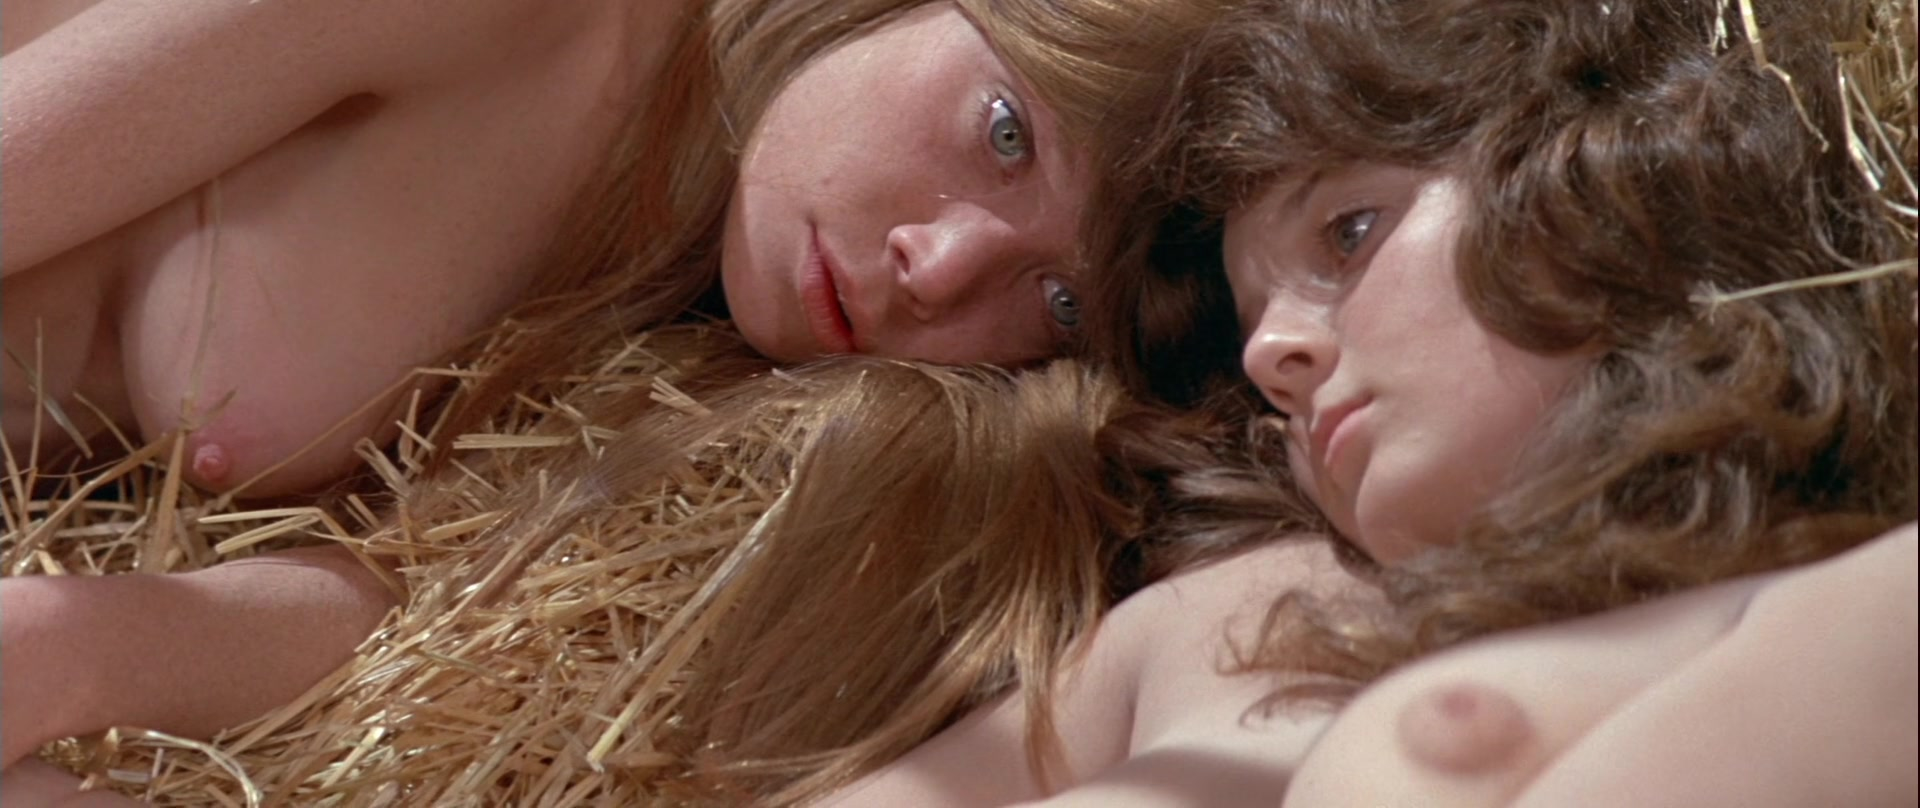 Sissy Spacek nude - Prime Cut (1972)